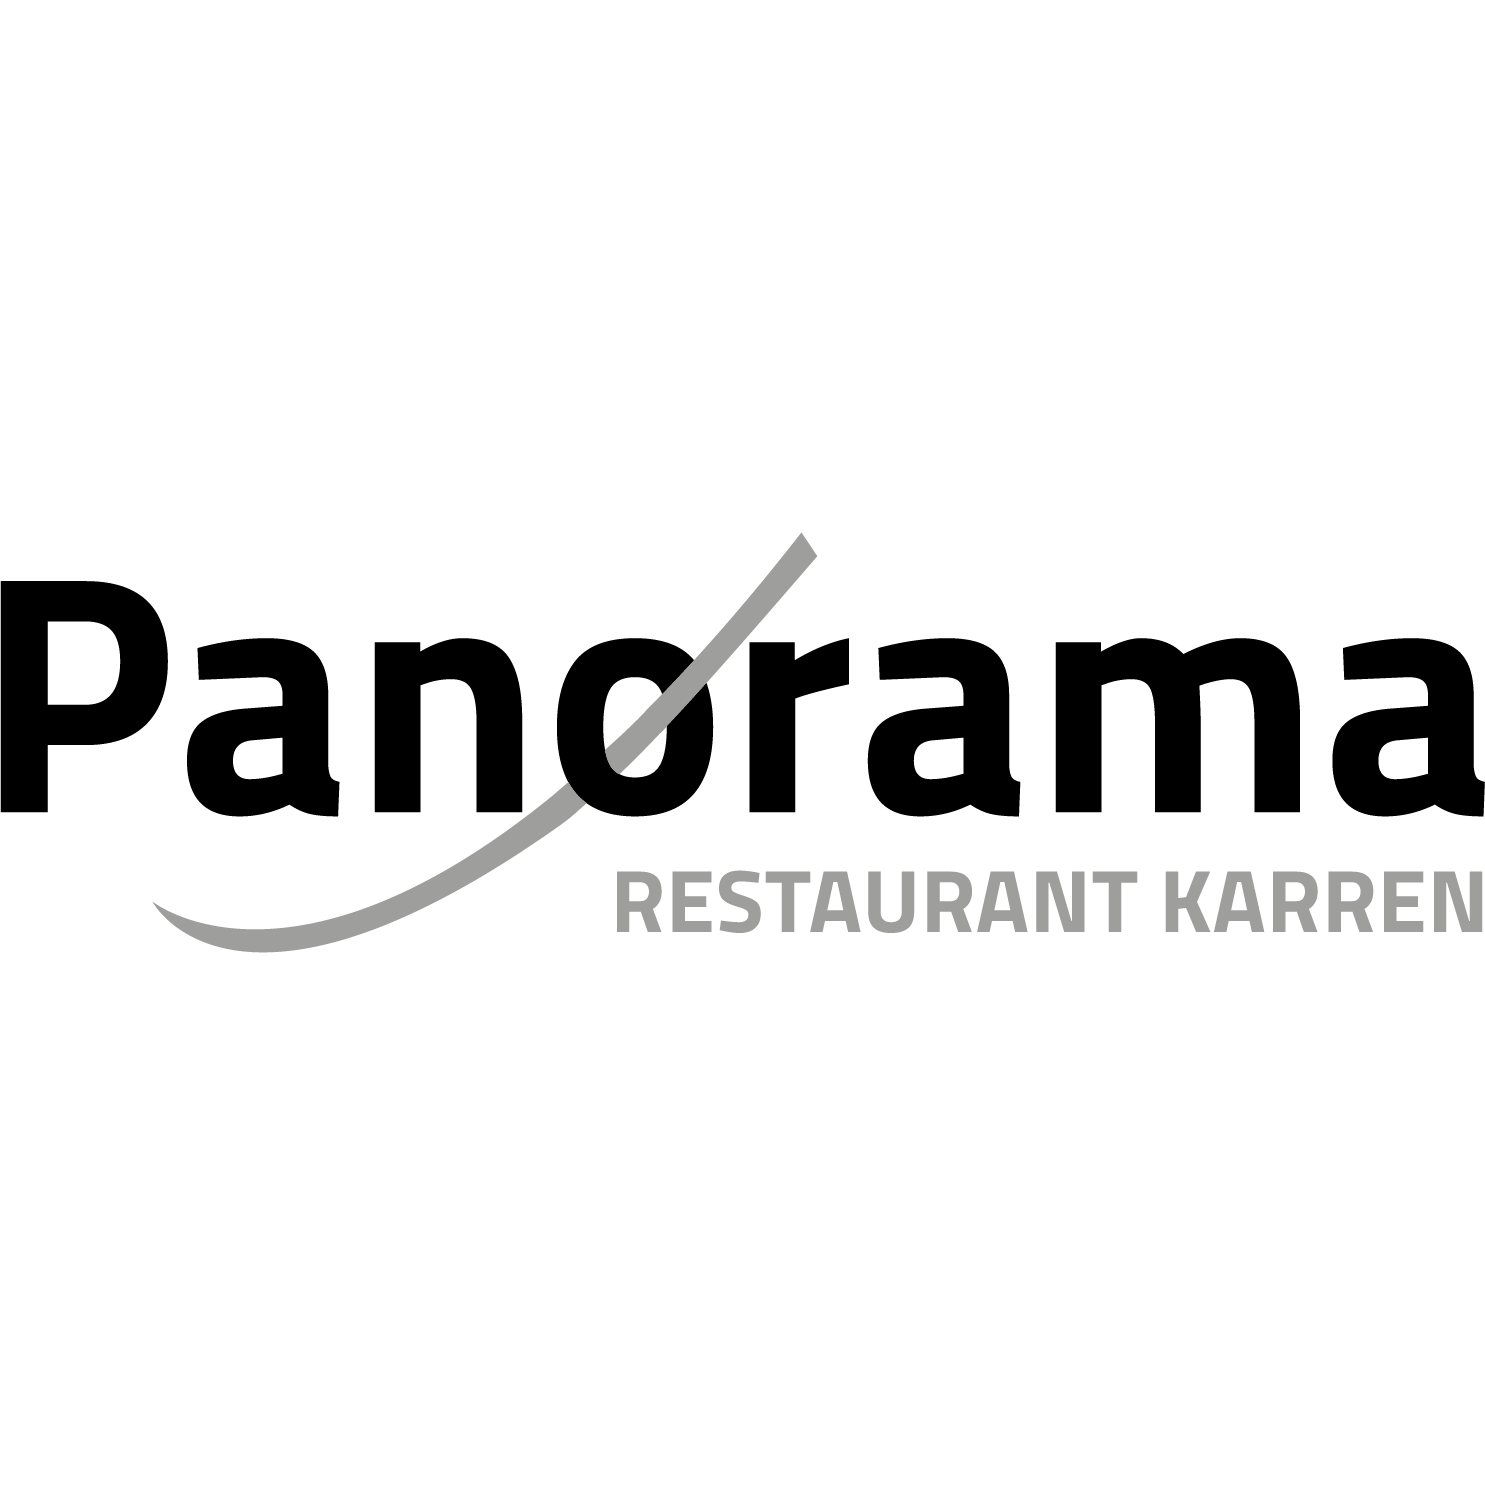 Panoramarestaurant Karren Logo